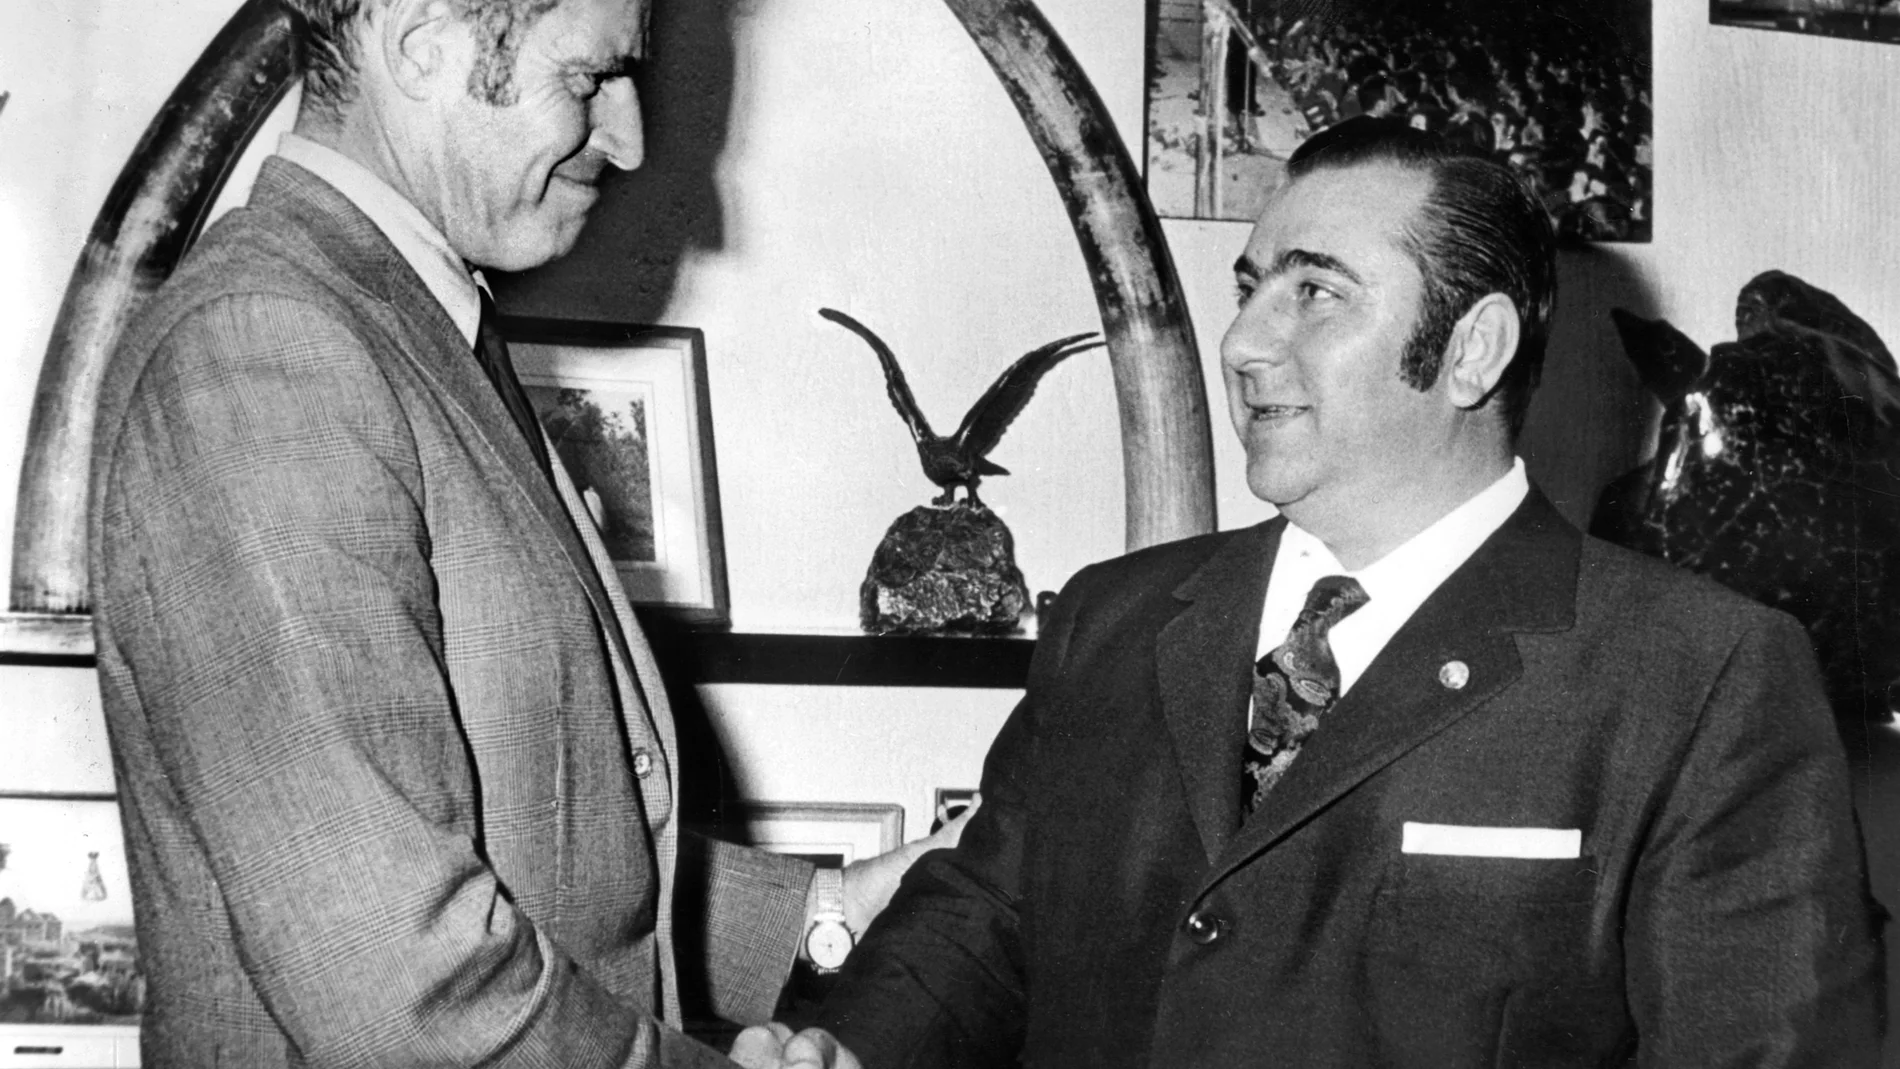 El productor de Ízaro Films, Julián Reyzabal (d), saluda al actor Charlton Heston, con motivo del próximo rodaje en España de la película "Marco Antonio", dirigida por el actor estadounidense. (Sin fecha, hacia 1971). EFE/jgb